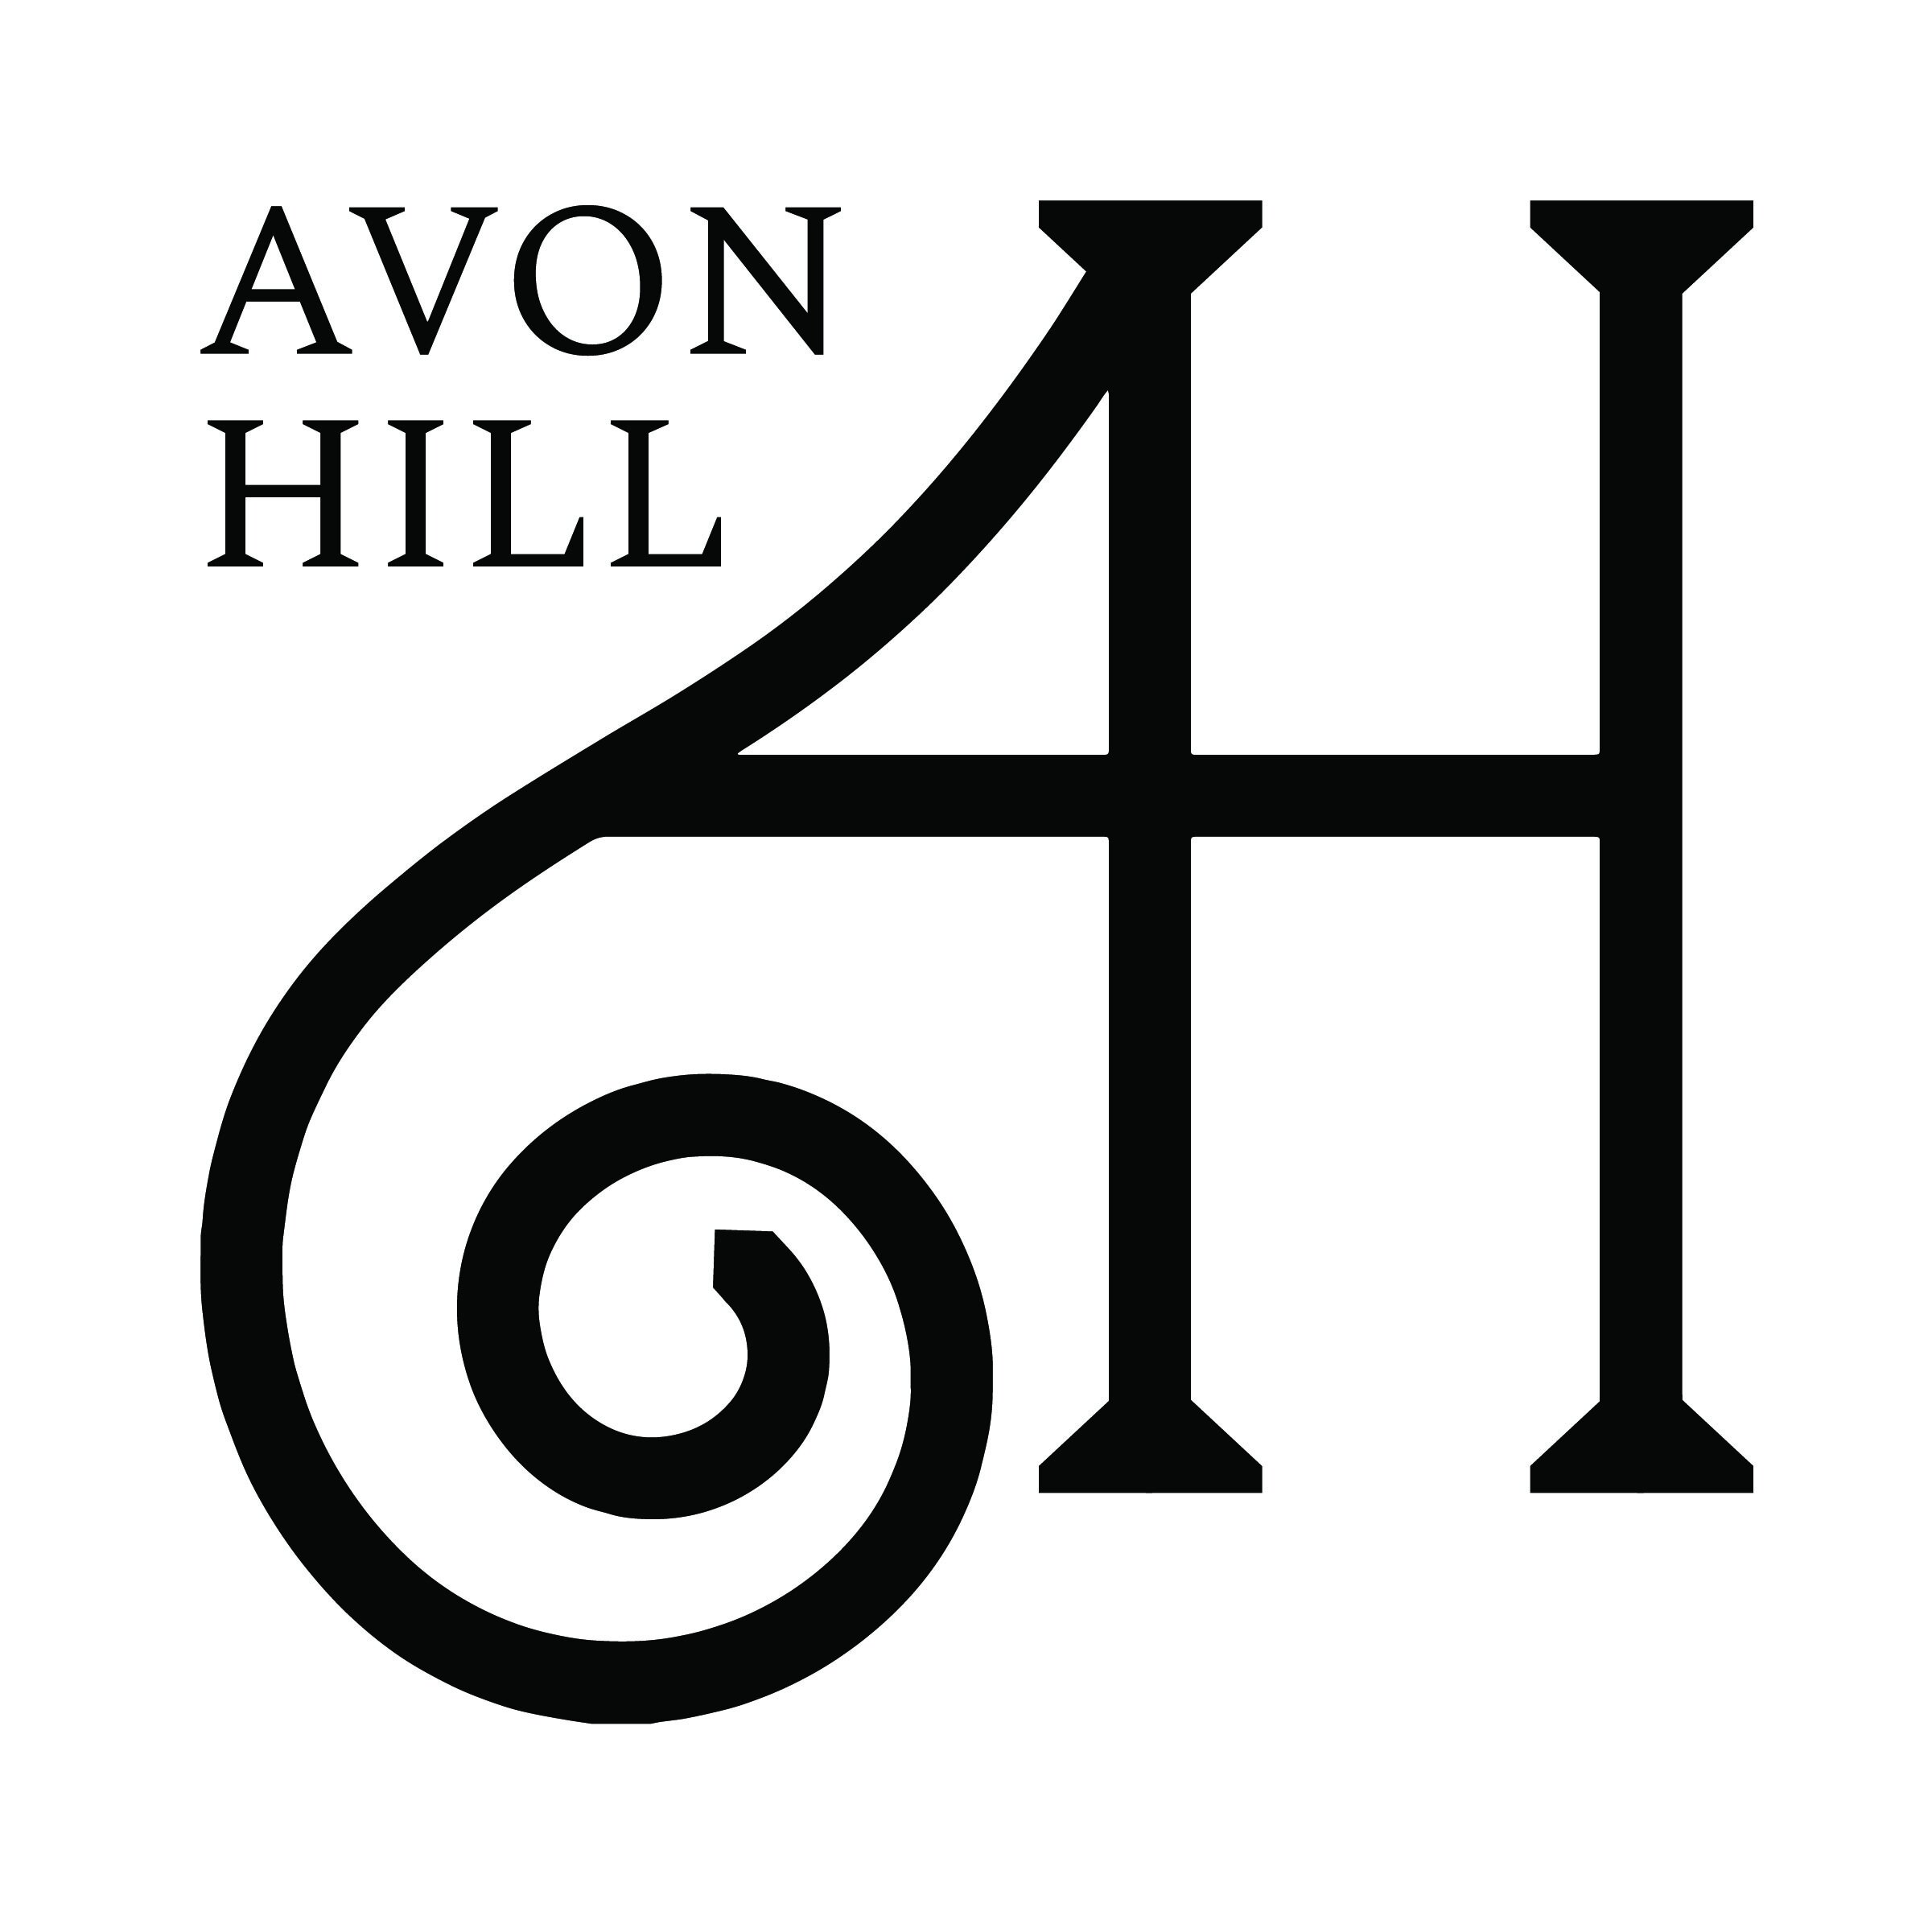 Avon Hill